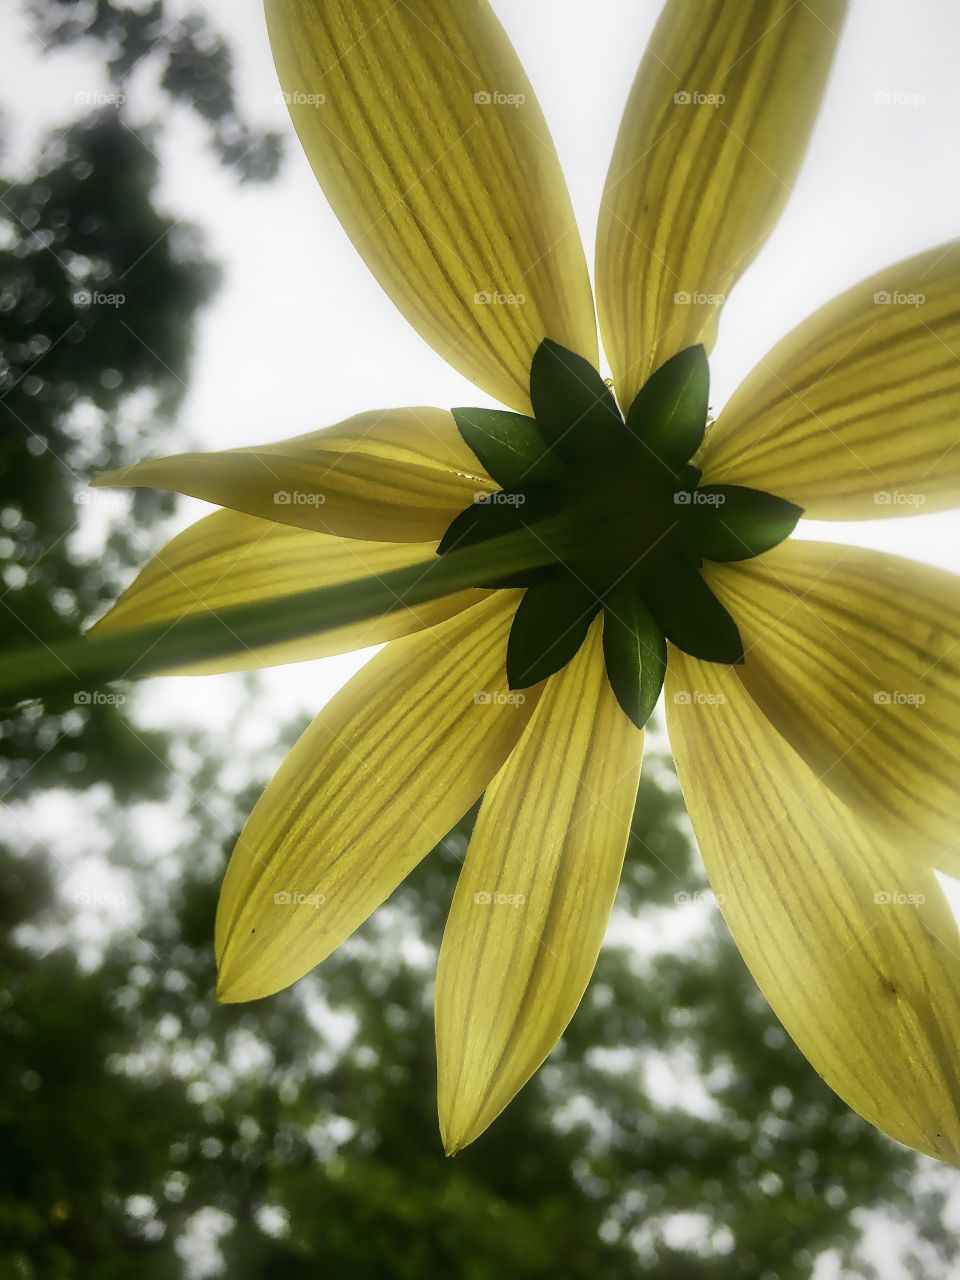 Unique view of a flower 